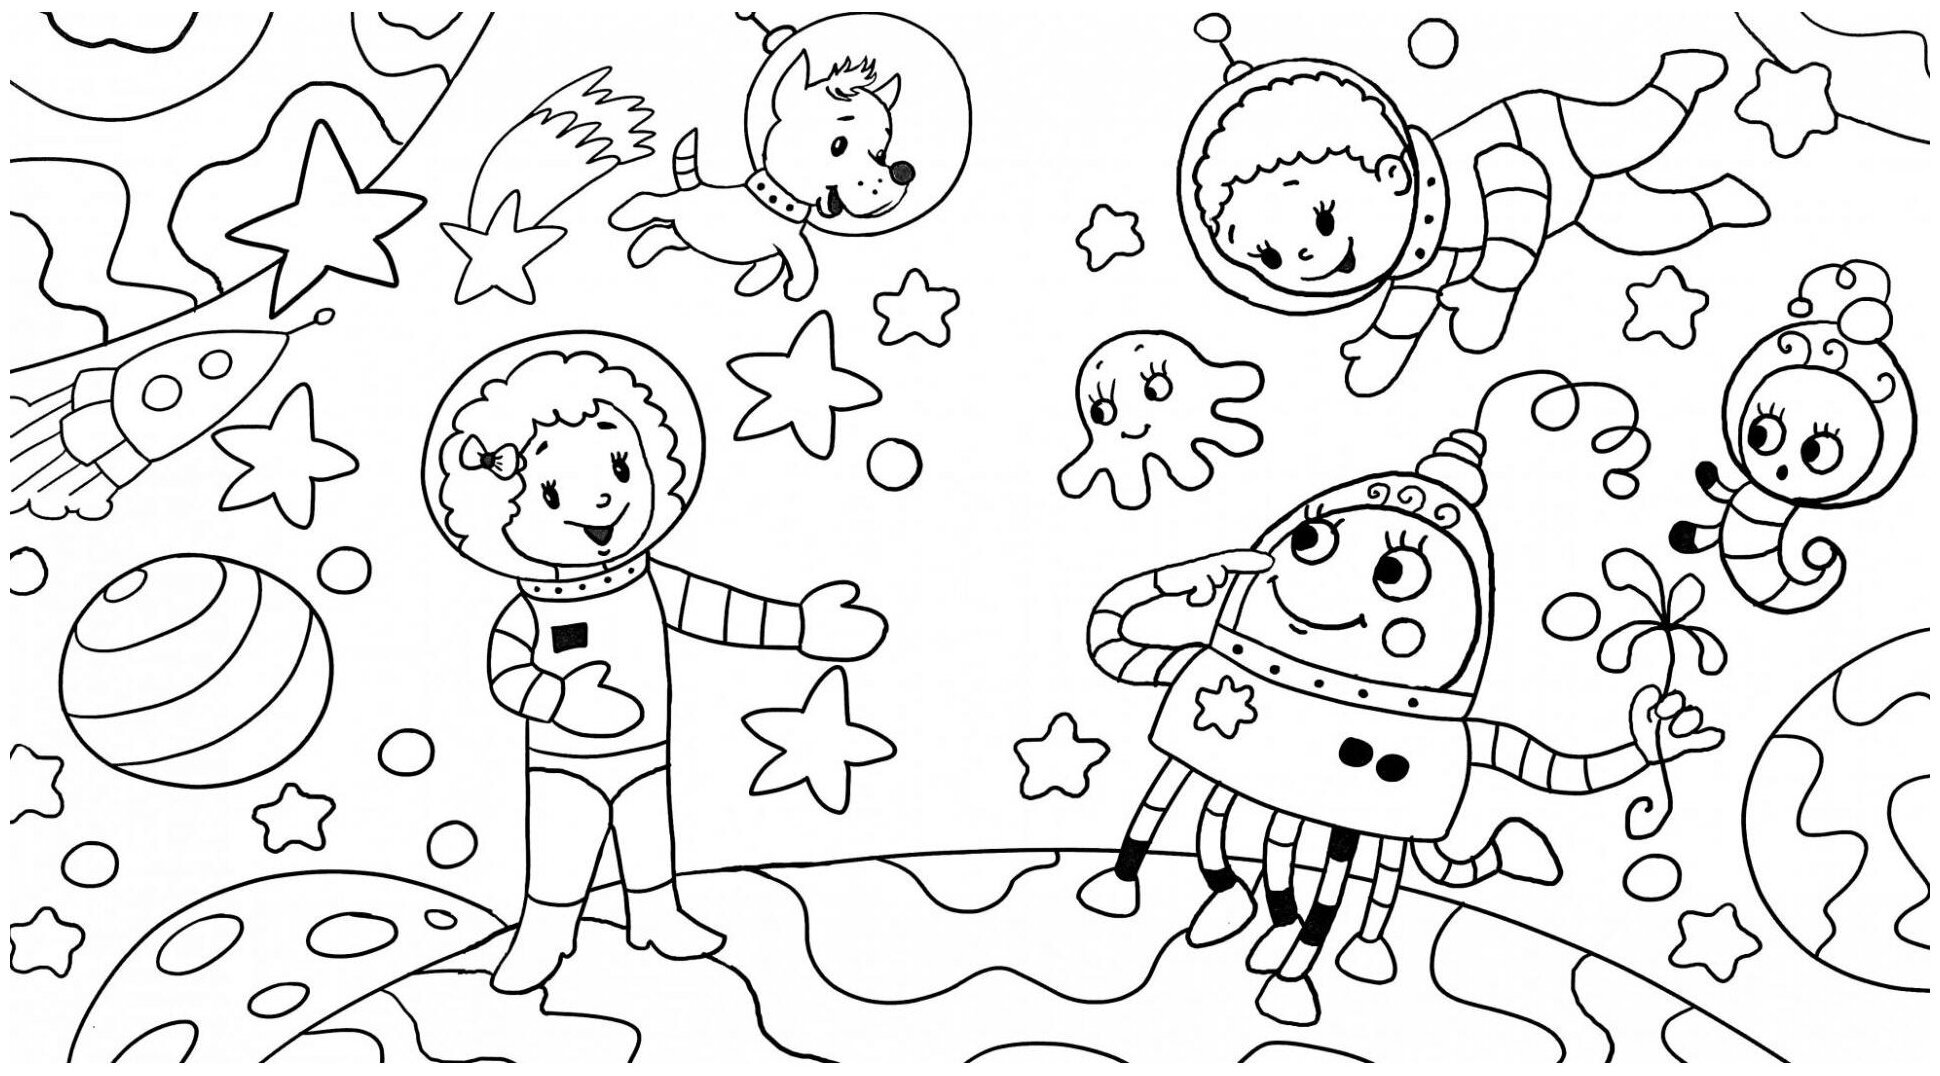 Раскраска космос и планеты. Раскраска. В космосе. Космос раскраска для детей. Космические раскраски для детей. Раскраски для детей космас.